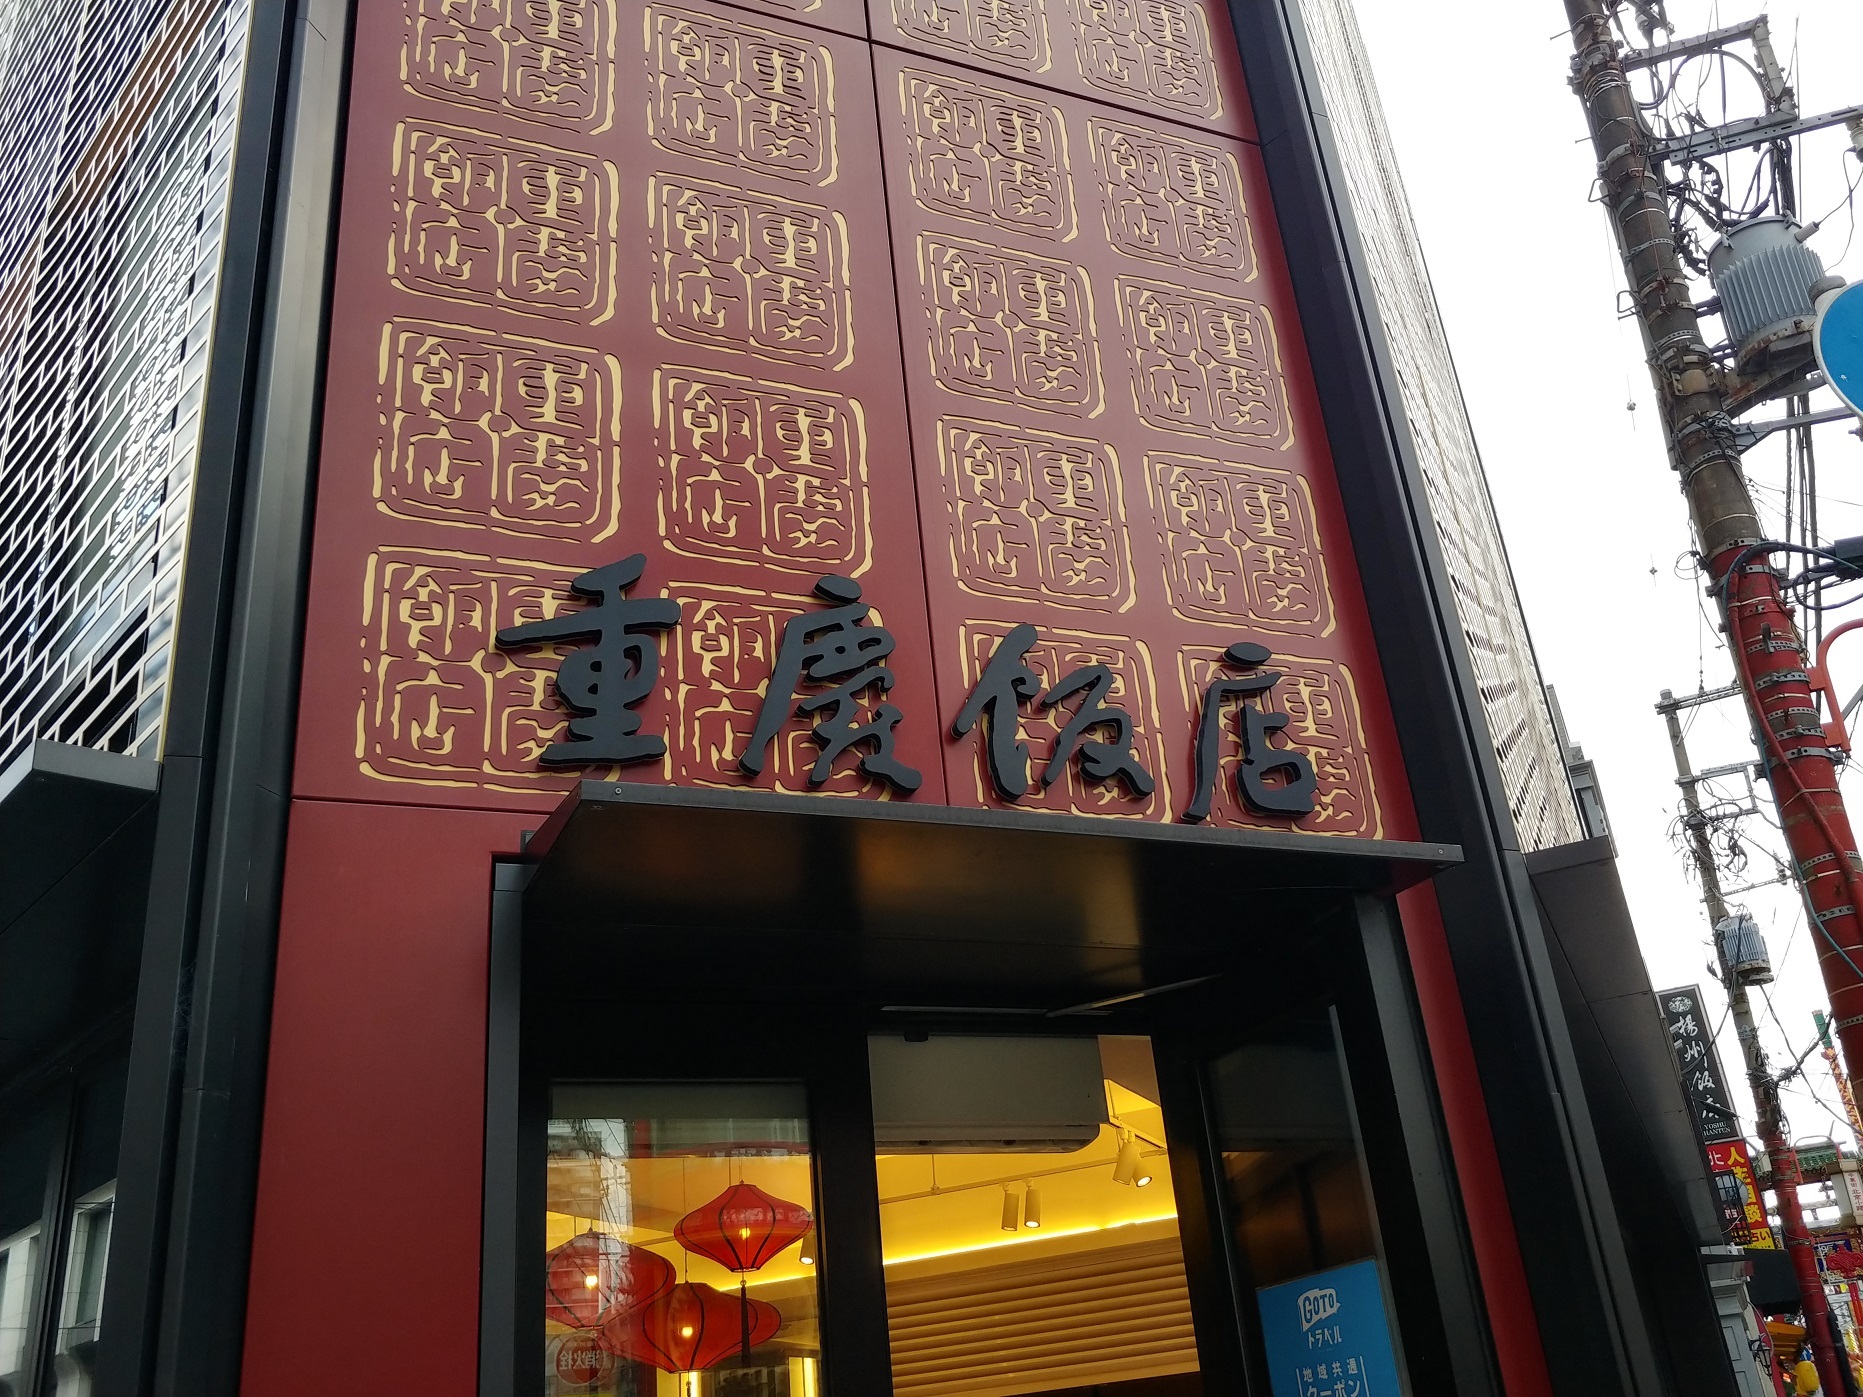 中華街にある「重慶飯店 本館売店」の入口